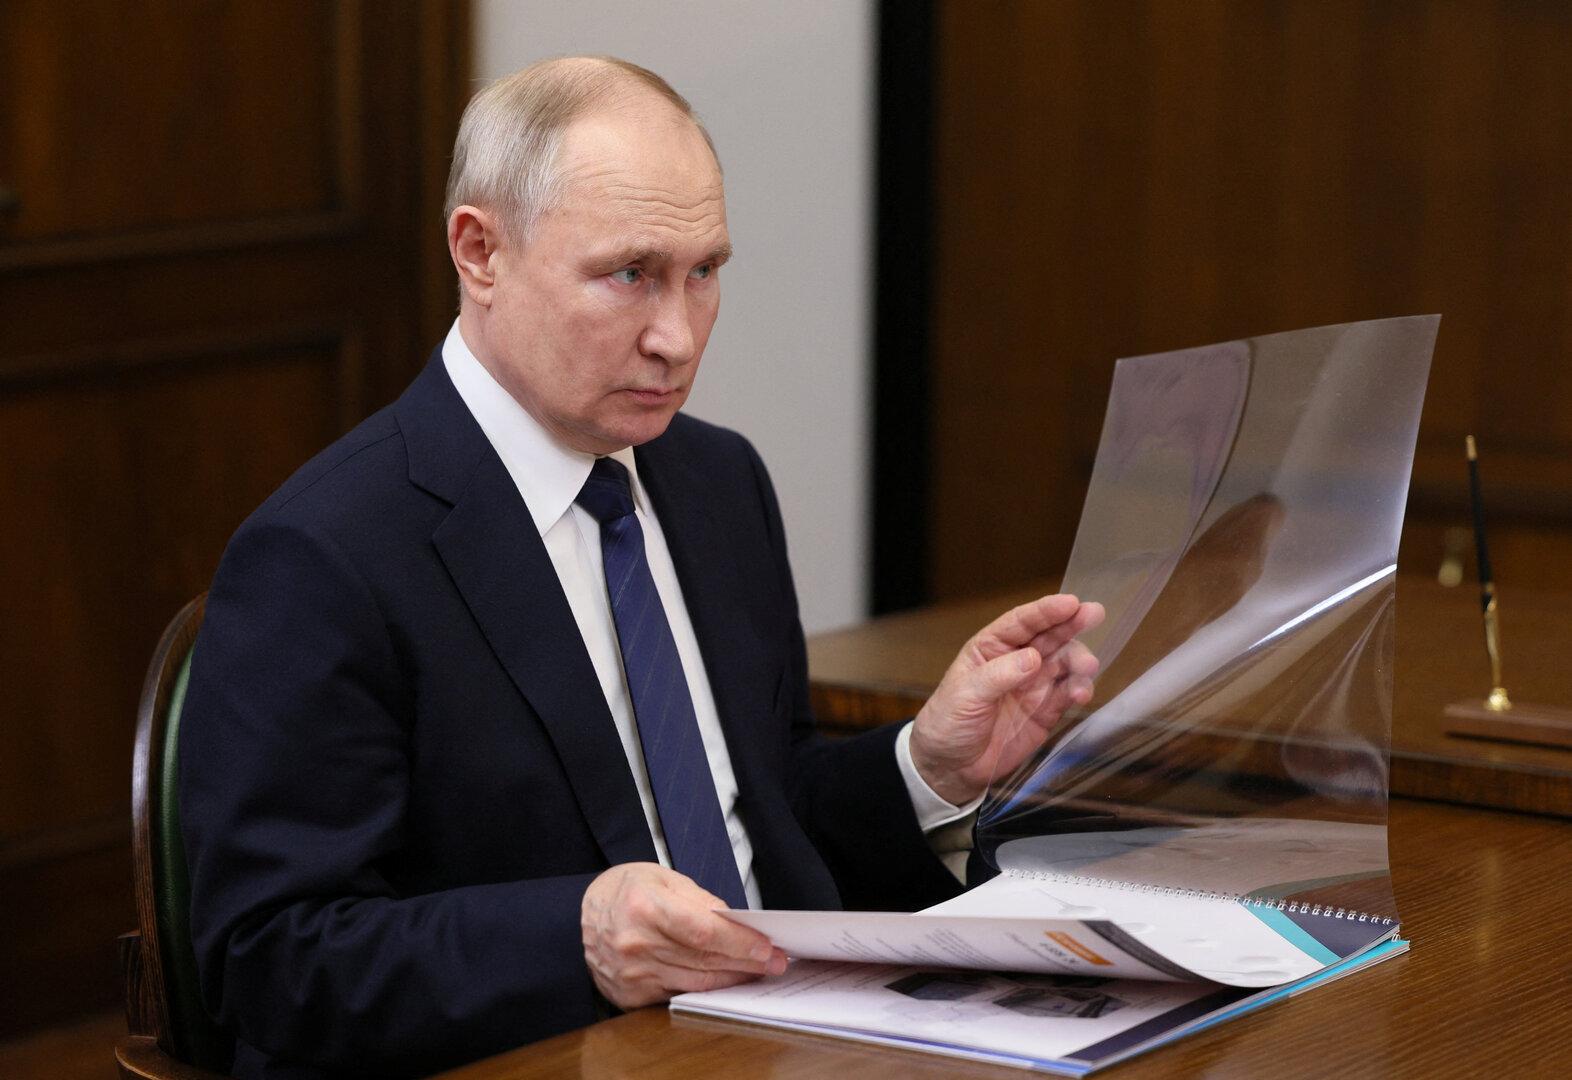 eu traut sich nicht an russlands milliarden - sanktionen weiter löchrig